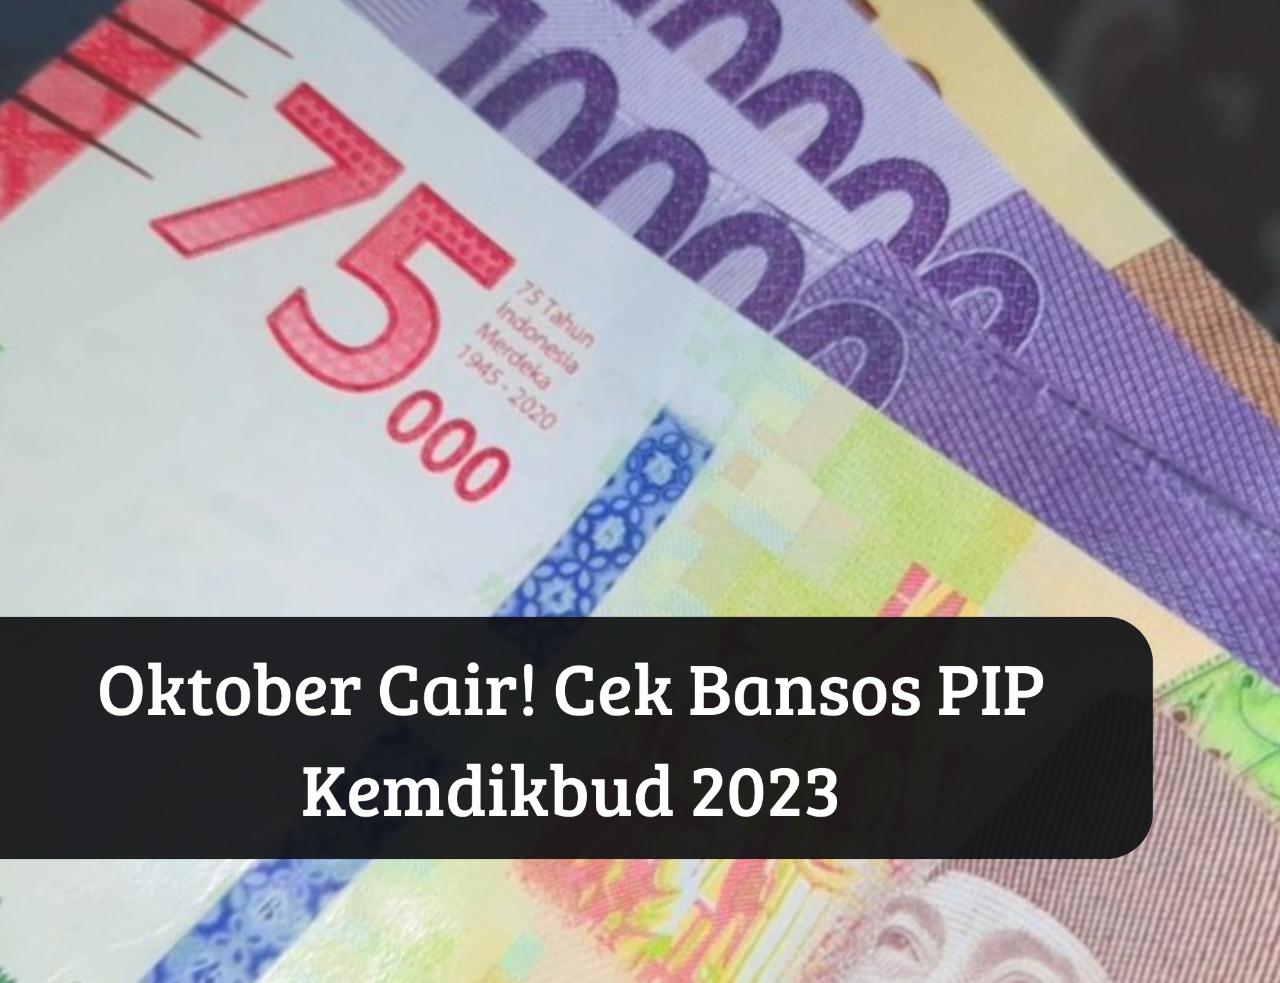 Sebelum Hangus Cek KIP Penerima! Bansos PIP Kemdikbud 2023 Cair Oktober, Uang Gratis Rp1 Juta Langsung Masuk